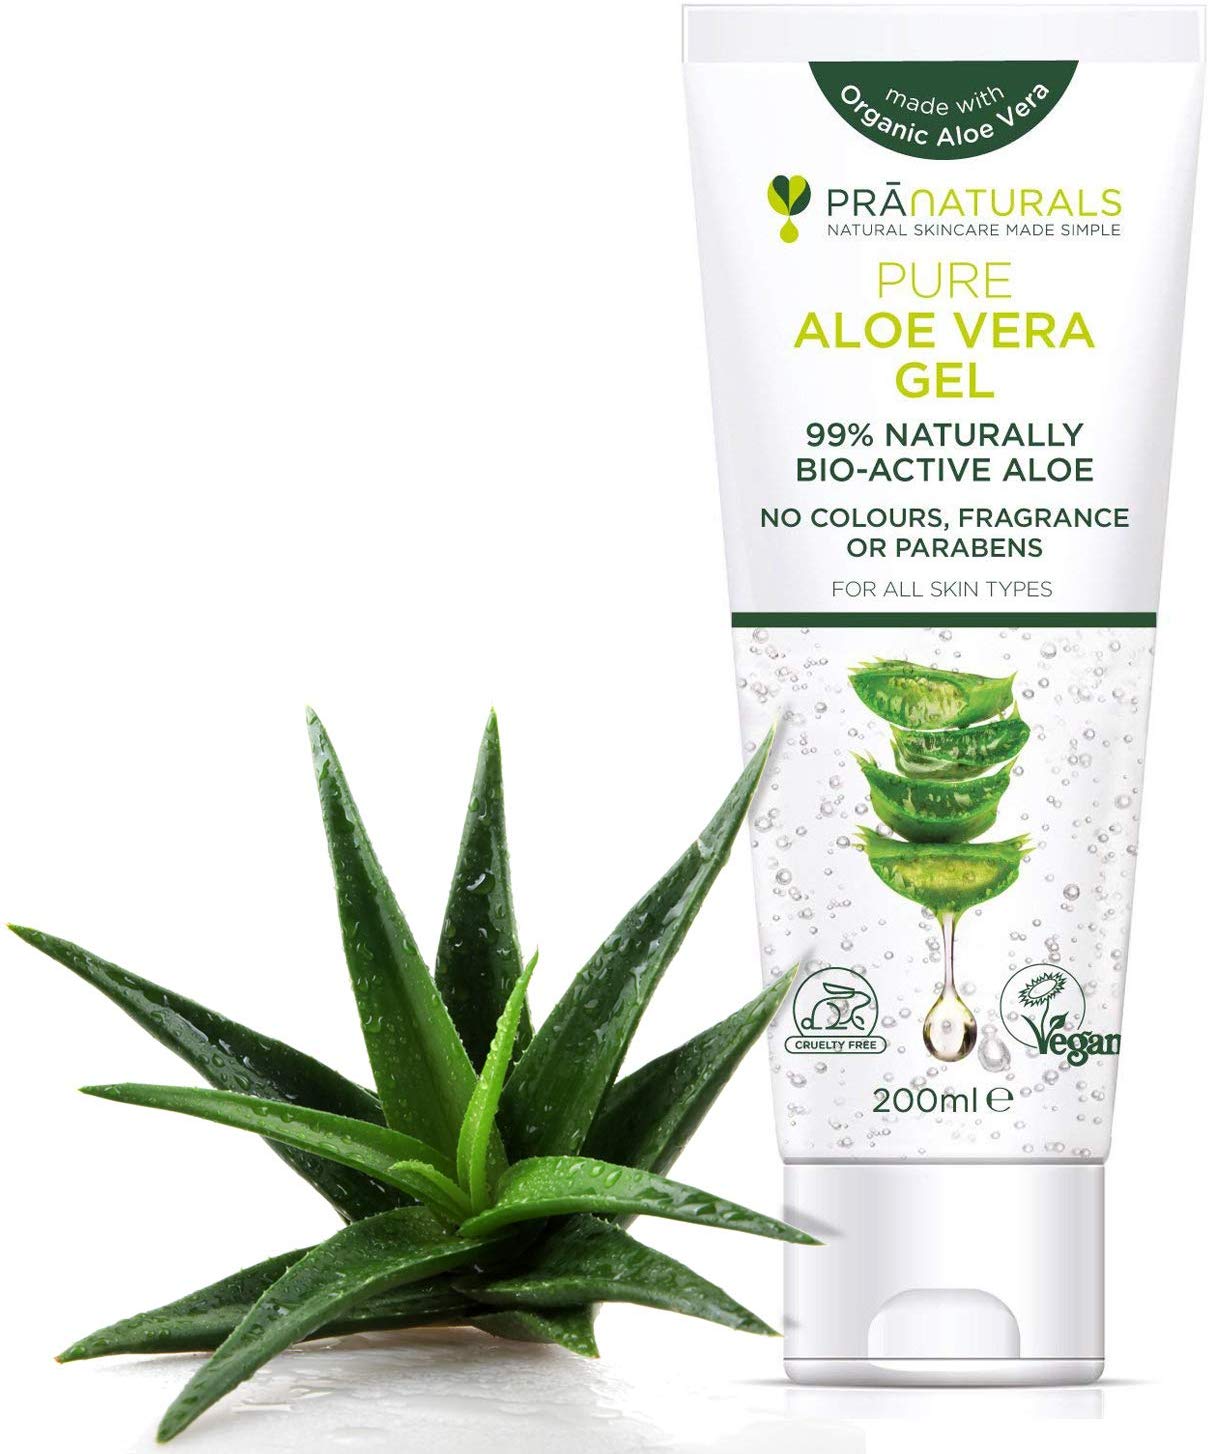 Meilleur gel hydratant Aloe Vera : Comparatif + avis 2021